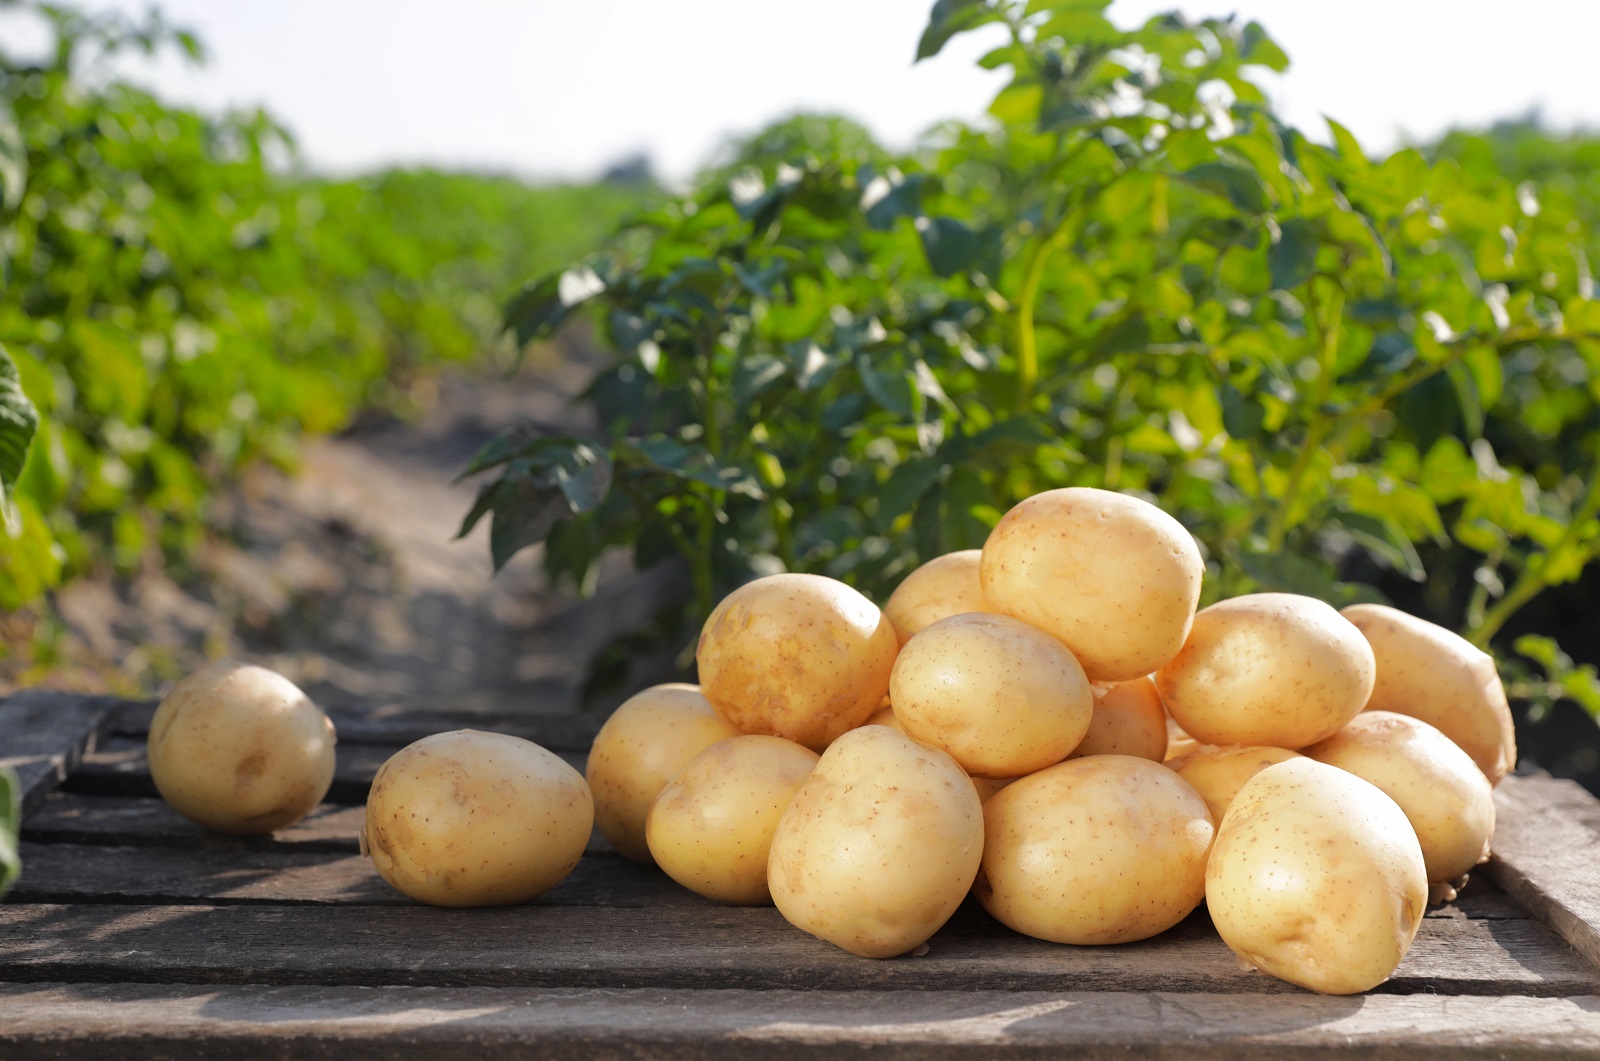 Récolte de pommes de terre primeur. © New Africa, Adobe Stock